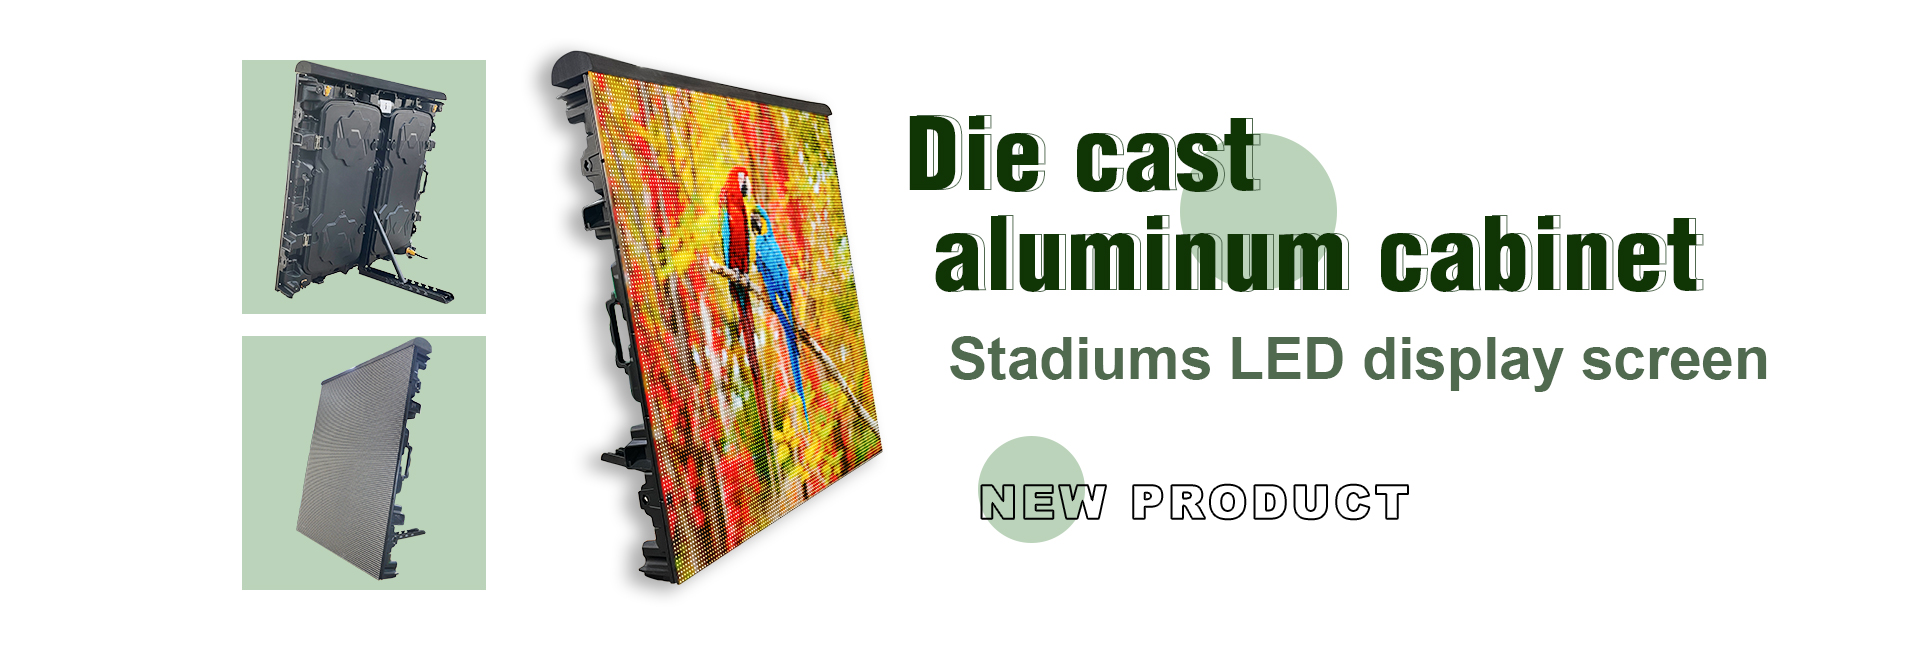 Die cast aluminum cabinet